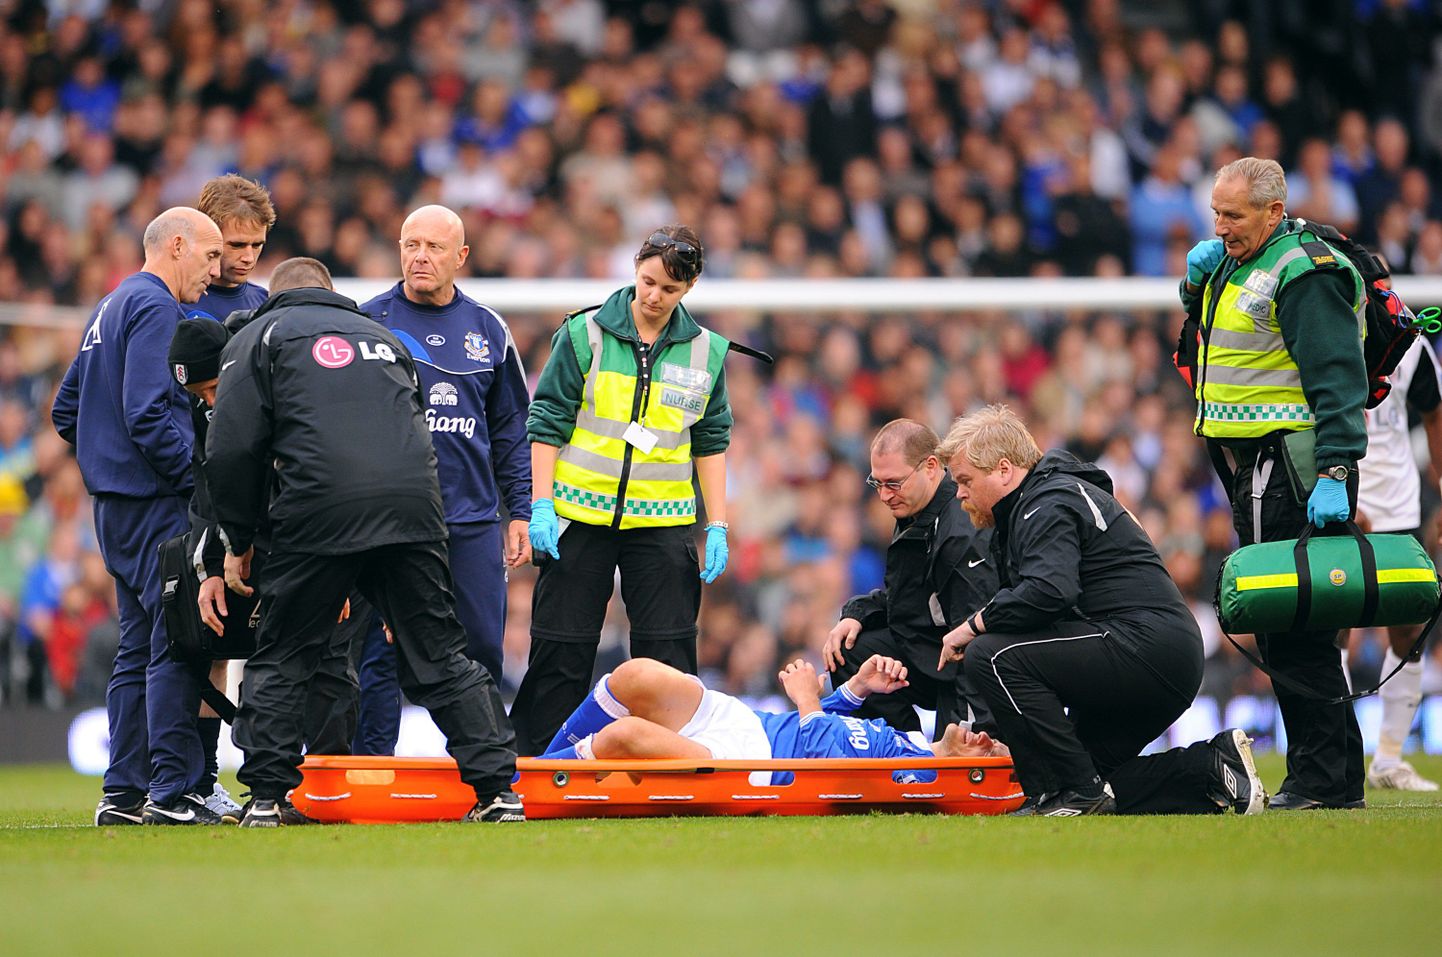 Maailmas enim viljeletavas spordialas jalgpallis juhtub kõige rohkem vigastusi. Pildil Inglismaa vutiklubi Evertoni mängija Phil Neville.